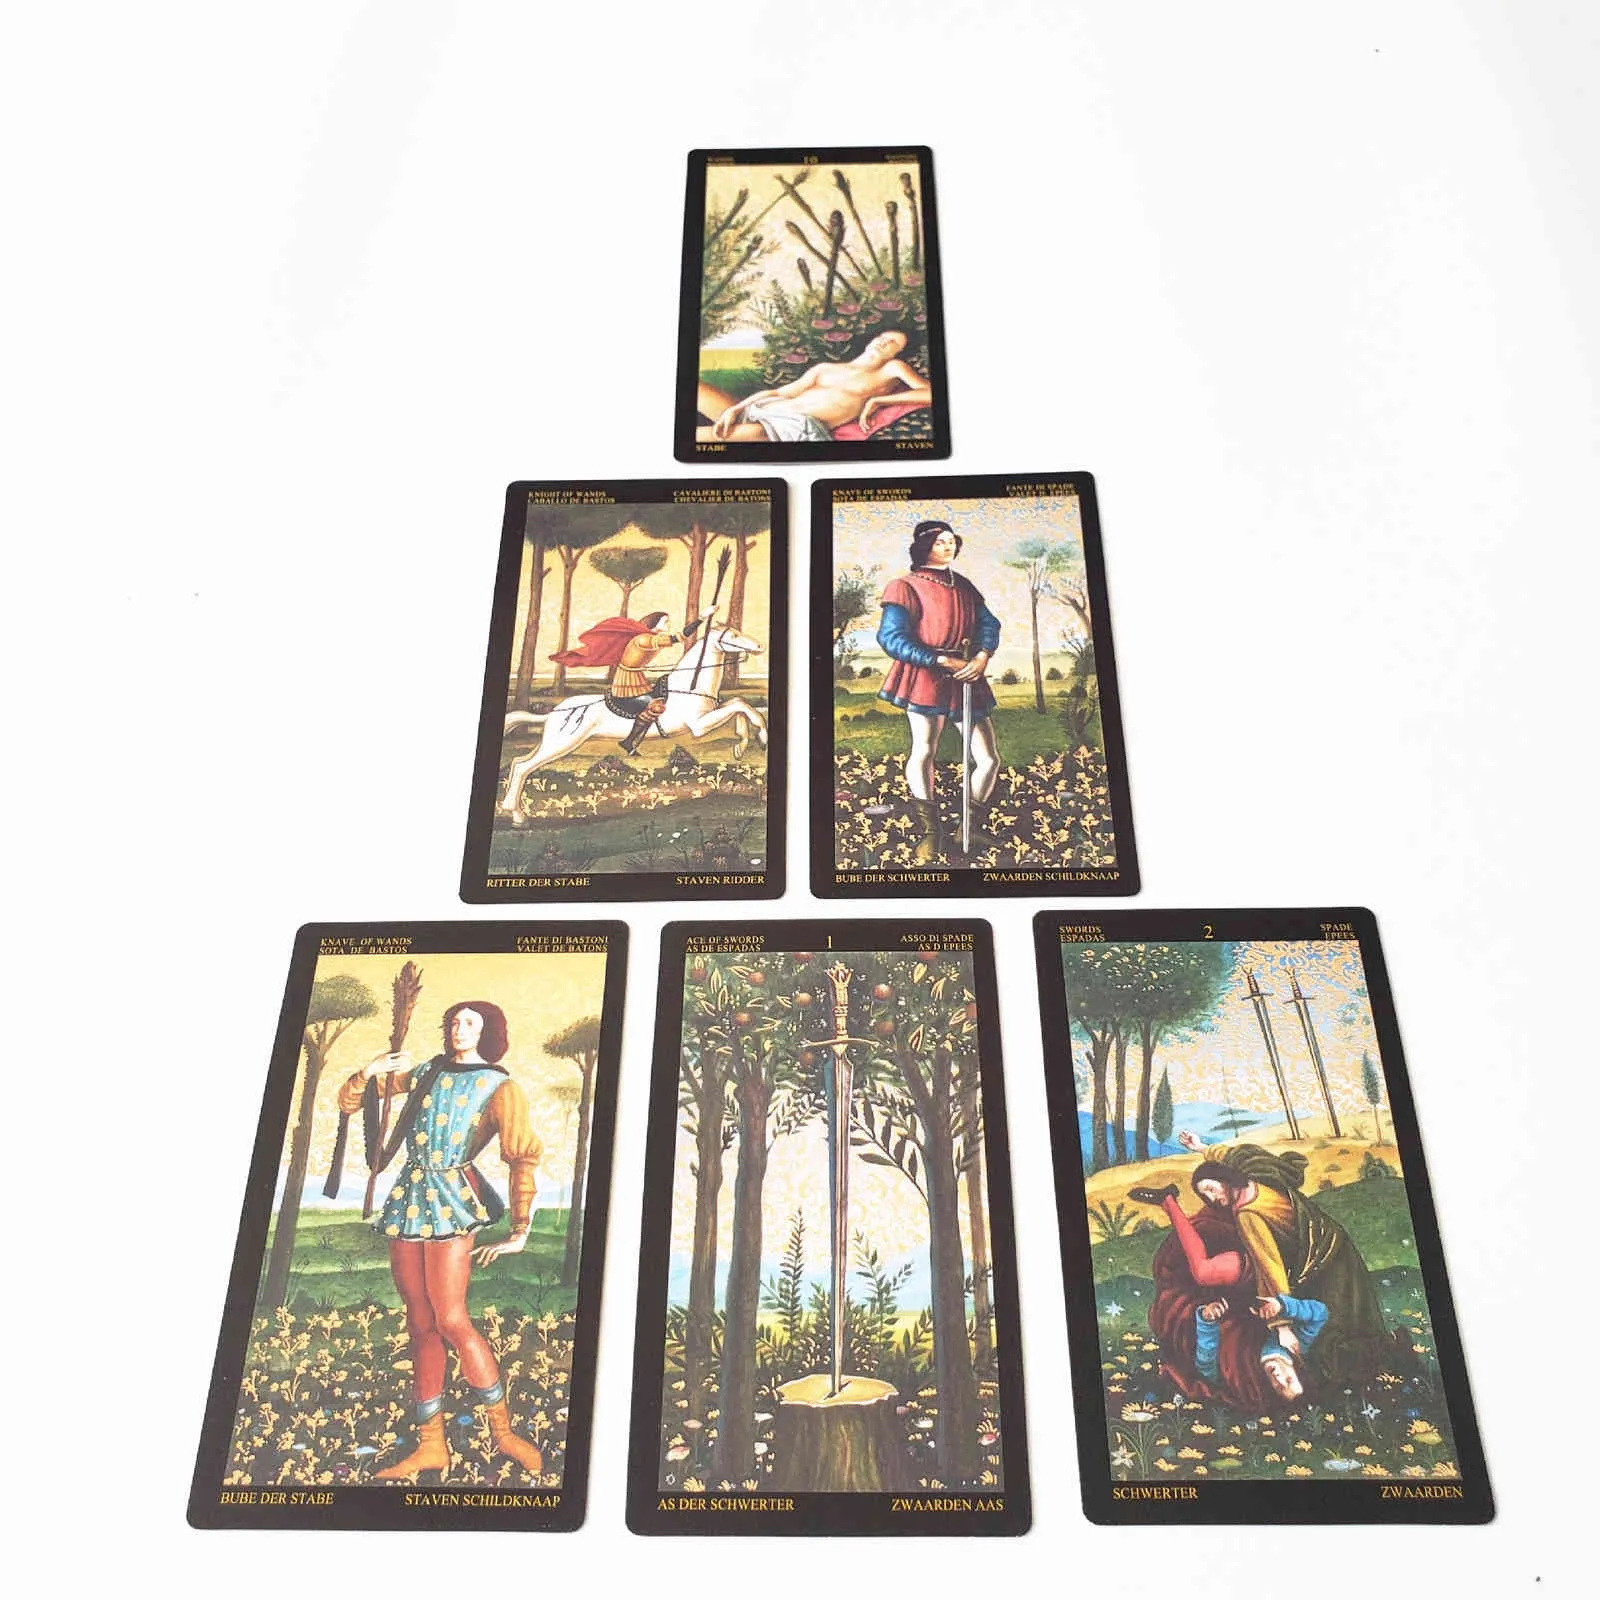 NEUES goldenes Botticelli-Kartenkarten-Tarot-Deck mit Ratgeber, Brettspiel für Erwachsene, Familienorakel für Schicksals-Wahrsagerei